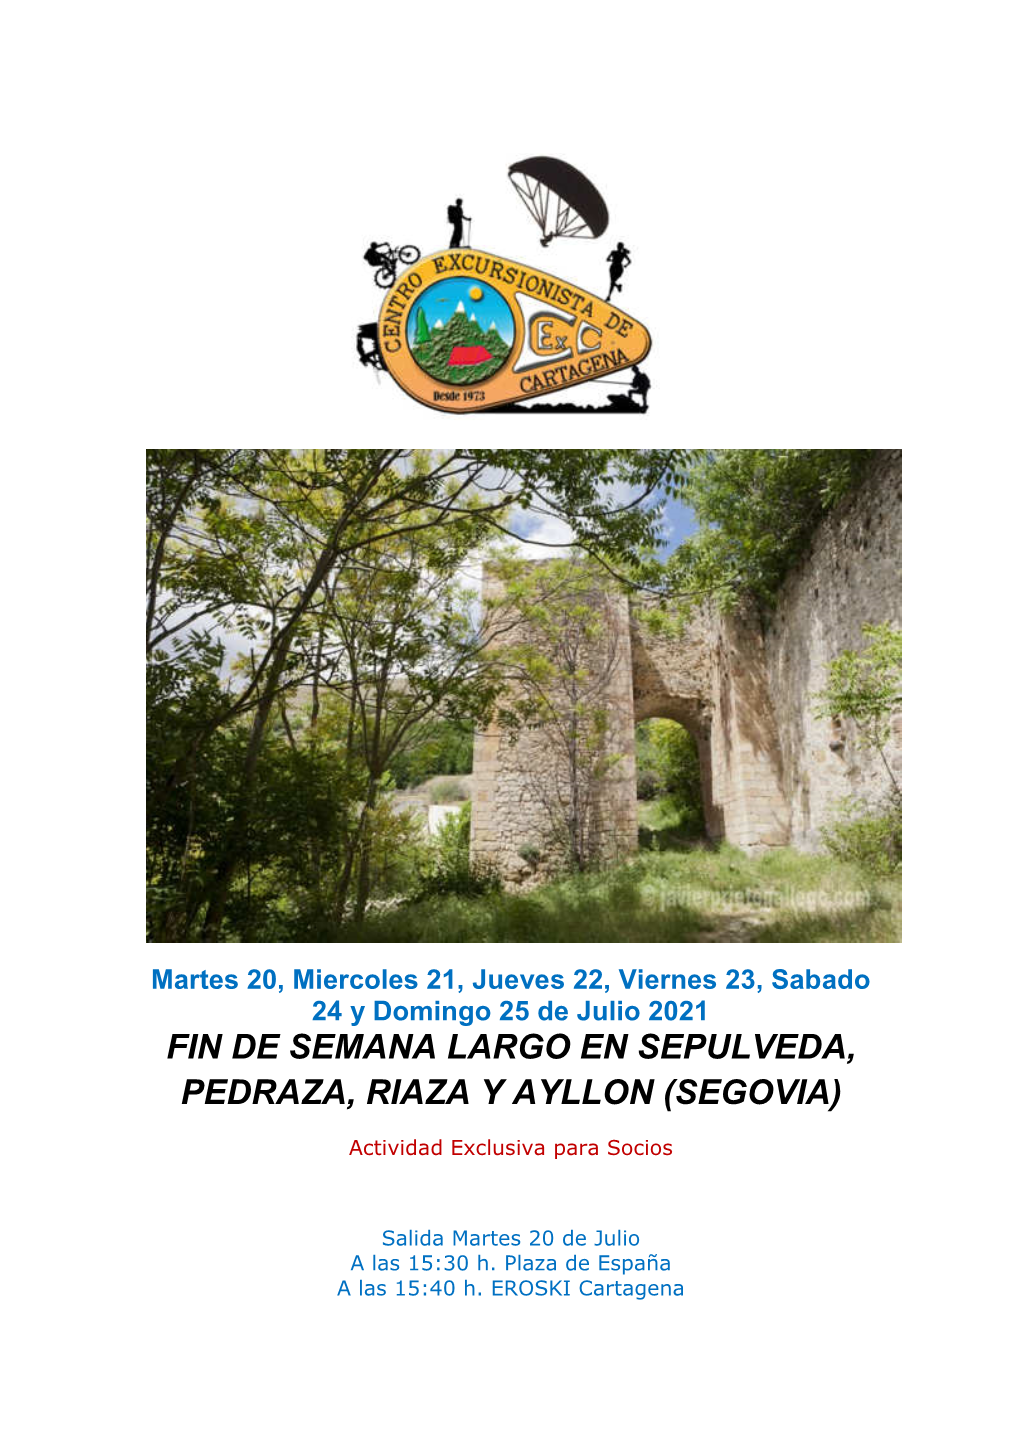 Fin De Semana Largo En Sepulveda, Pedraza, Riaza Y Ayllon (Segovia)